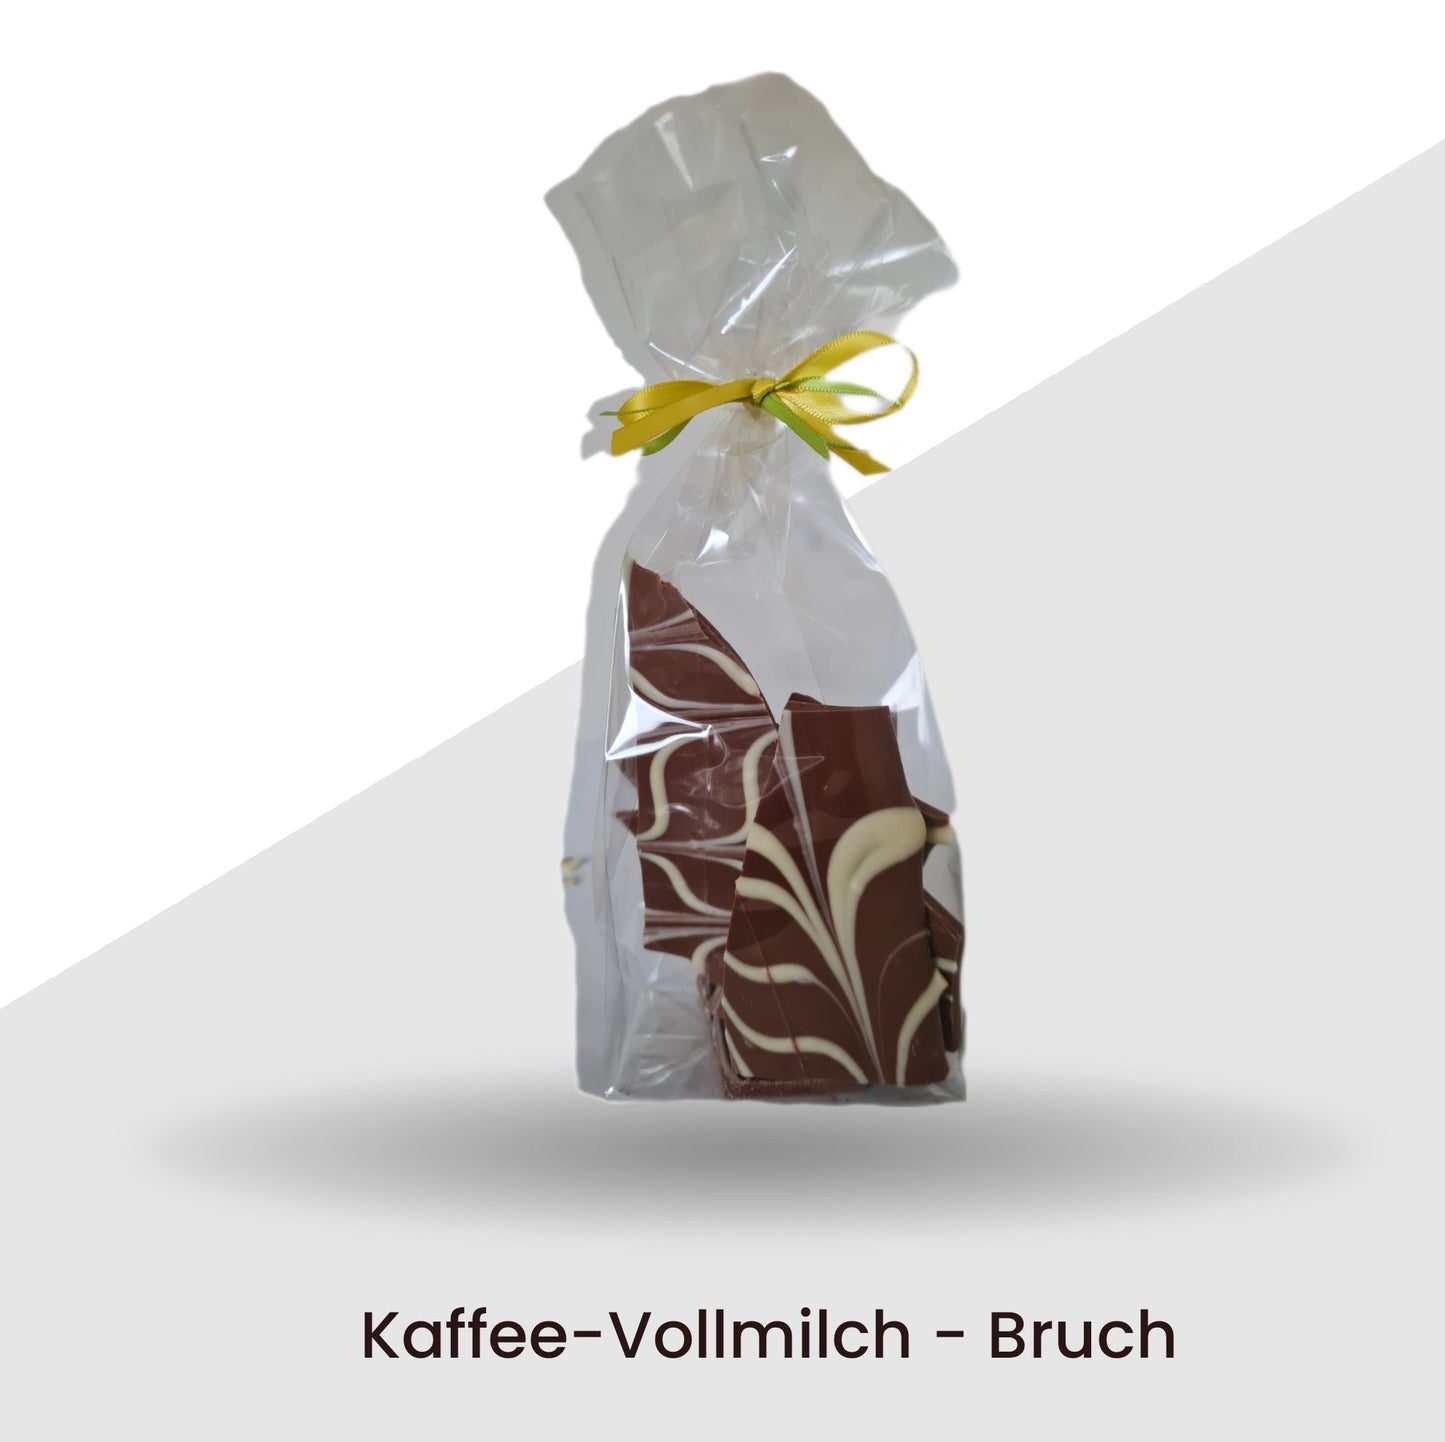 Kaffee - Vollmilch - Bruch